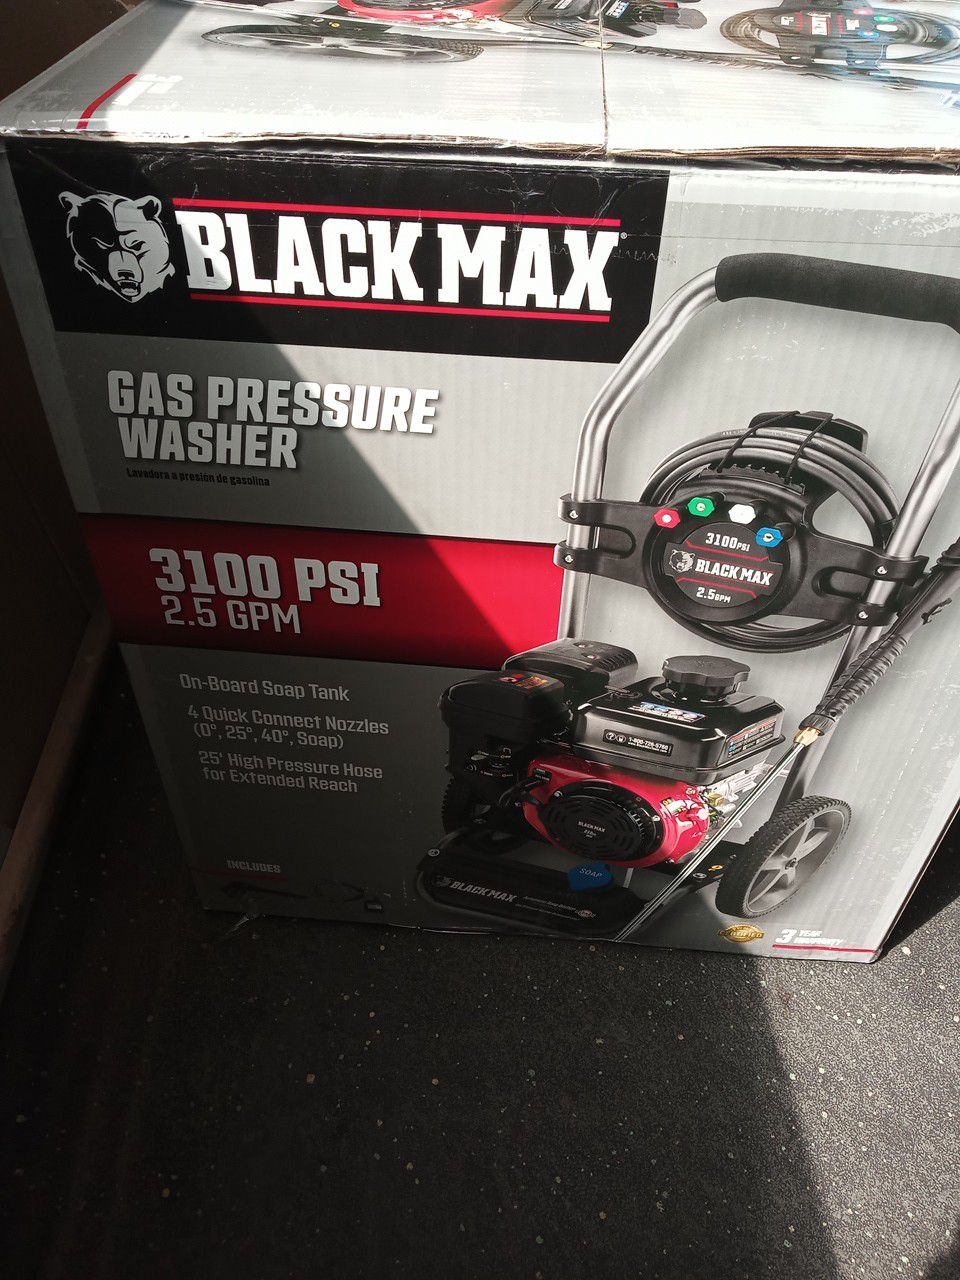 Black Max 3100 PSI Gas Pressure Washer